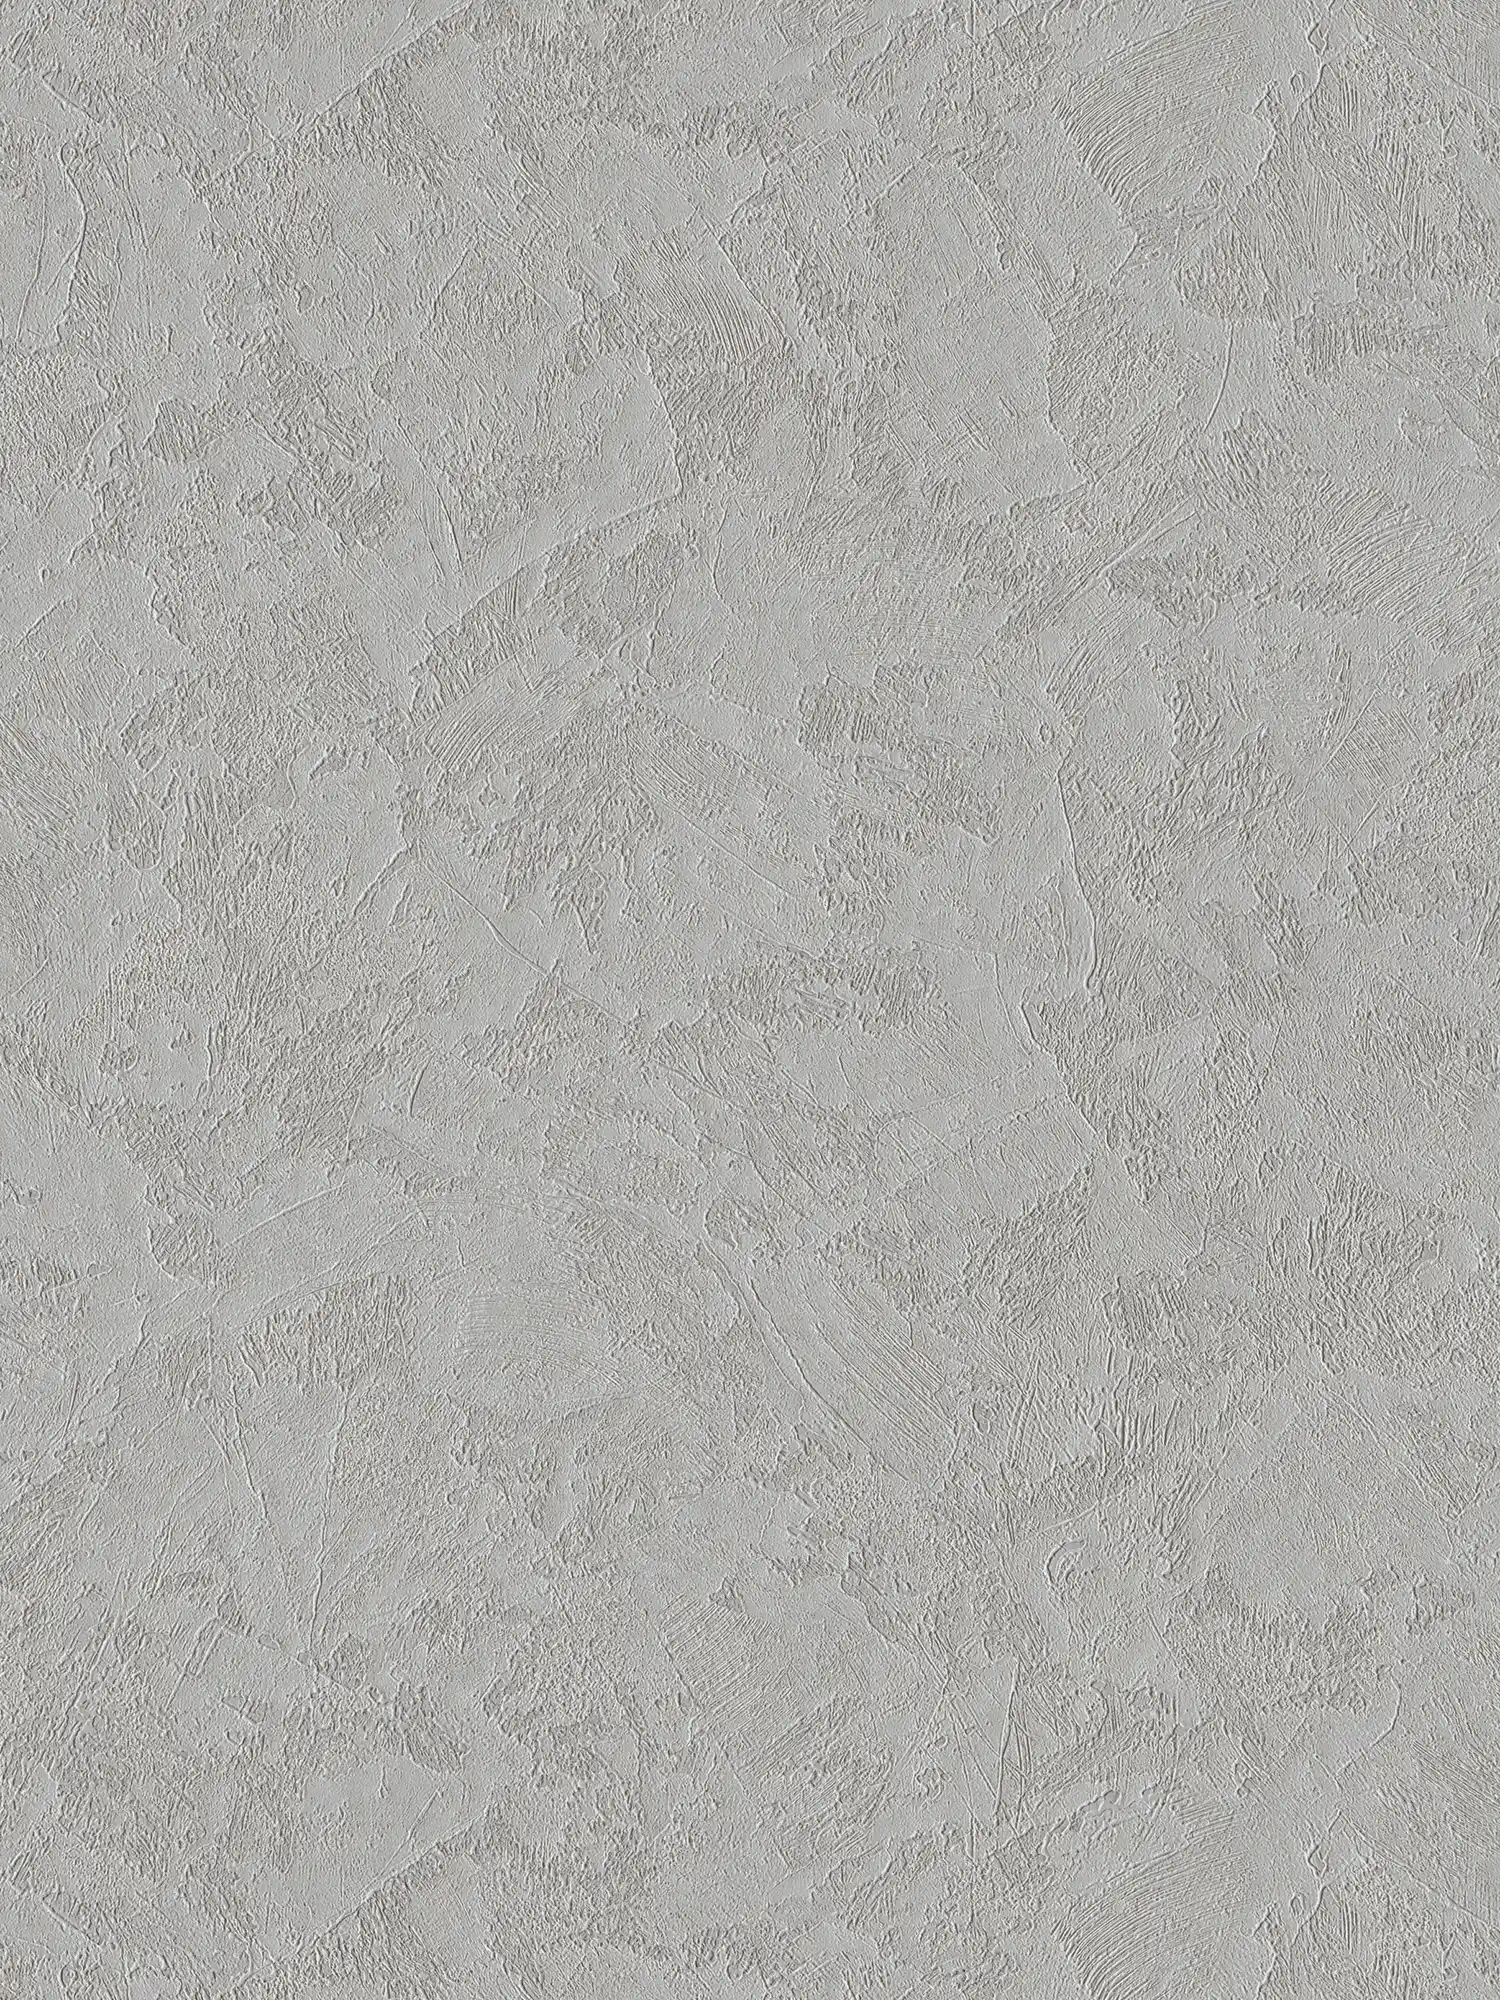 papier peint en papier texturé uni aspect plâtre avec effet scintillant - gris, argenté
